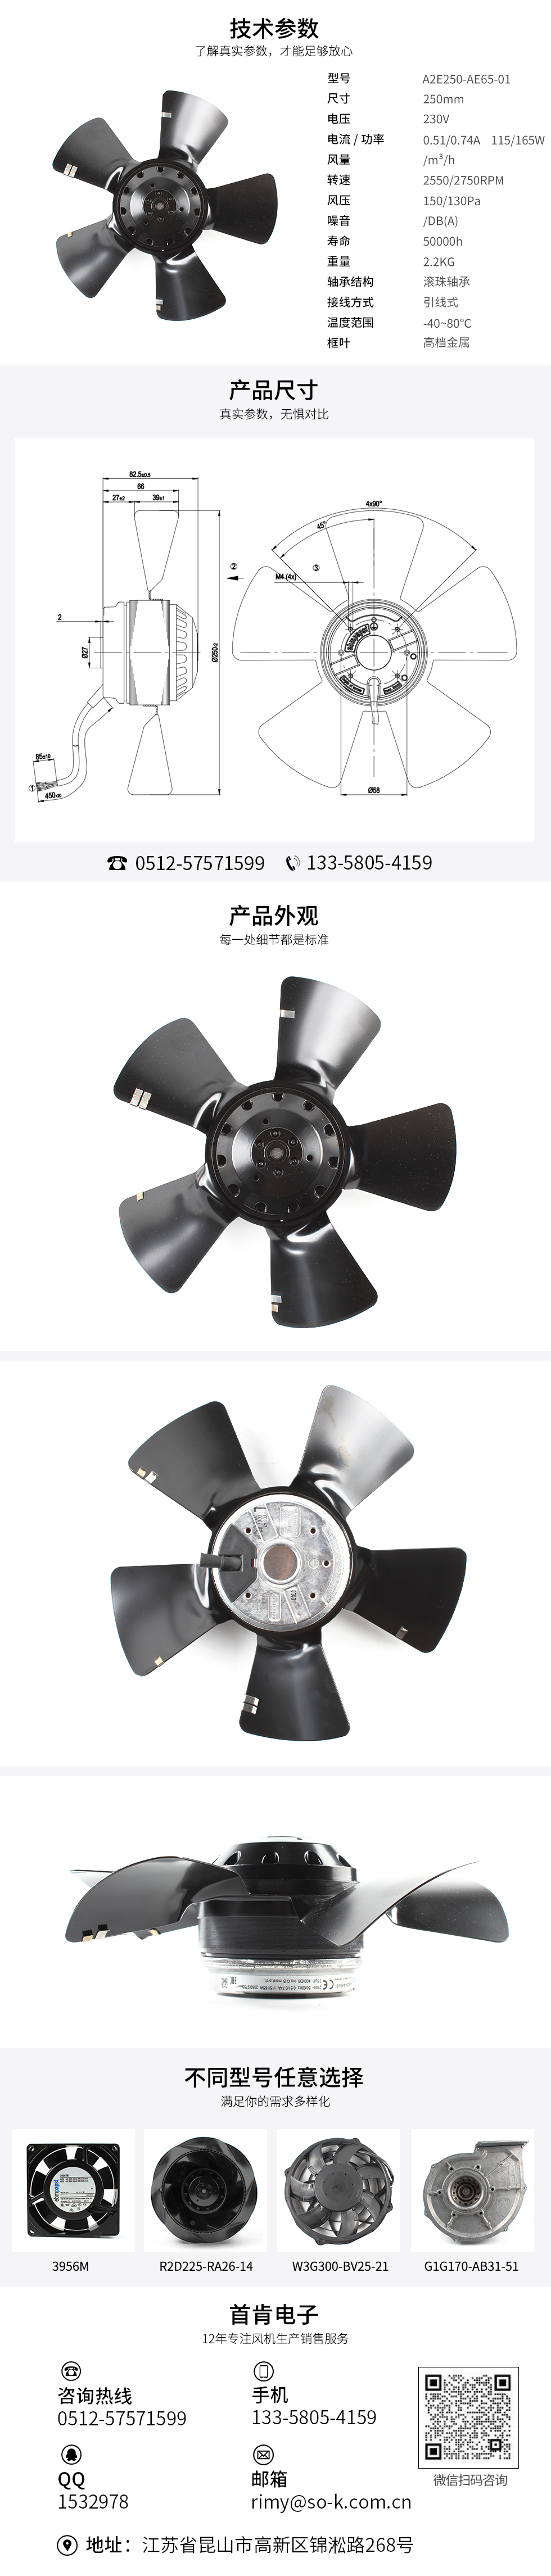 静音散热风扇,交流风扇生产厂家,机柜轴流风扇,A2E250-AE65-01